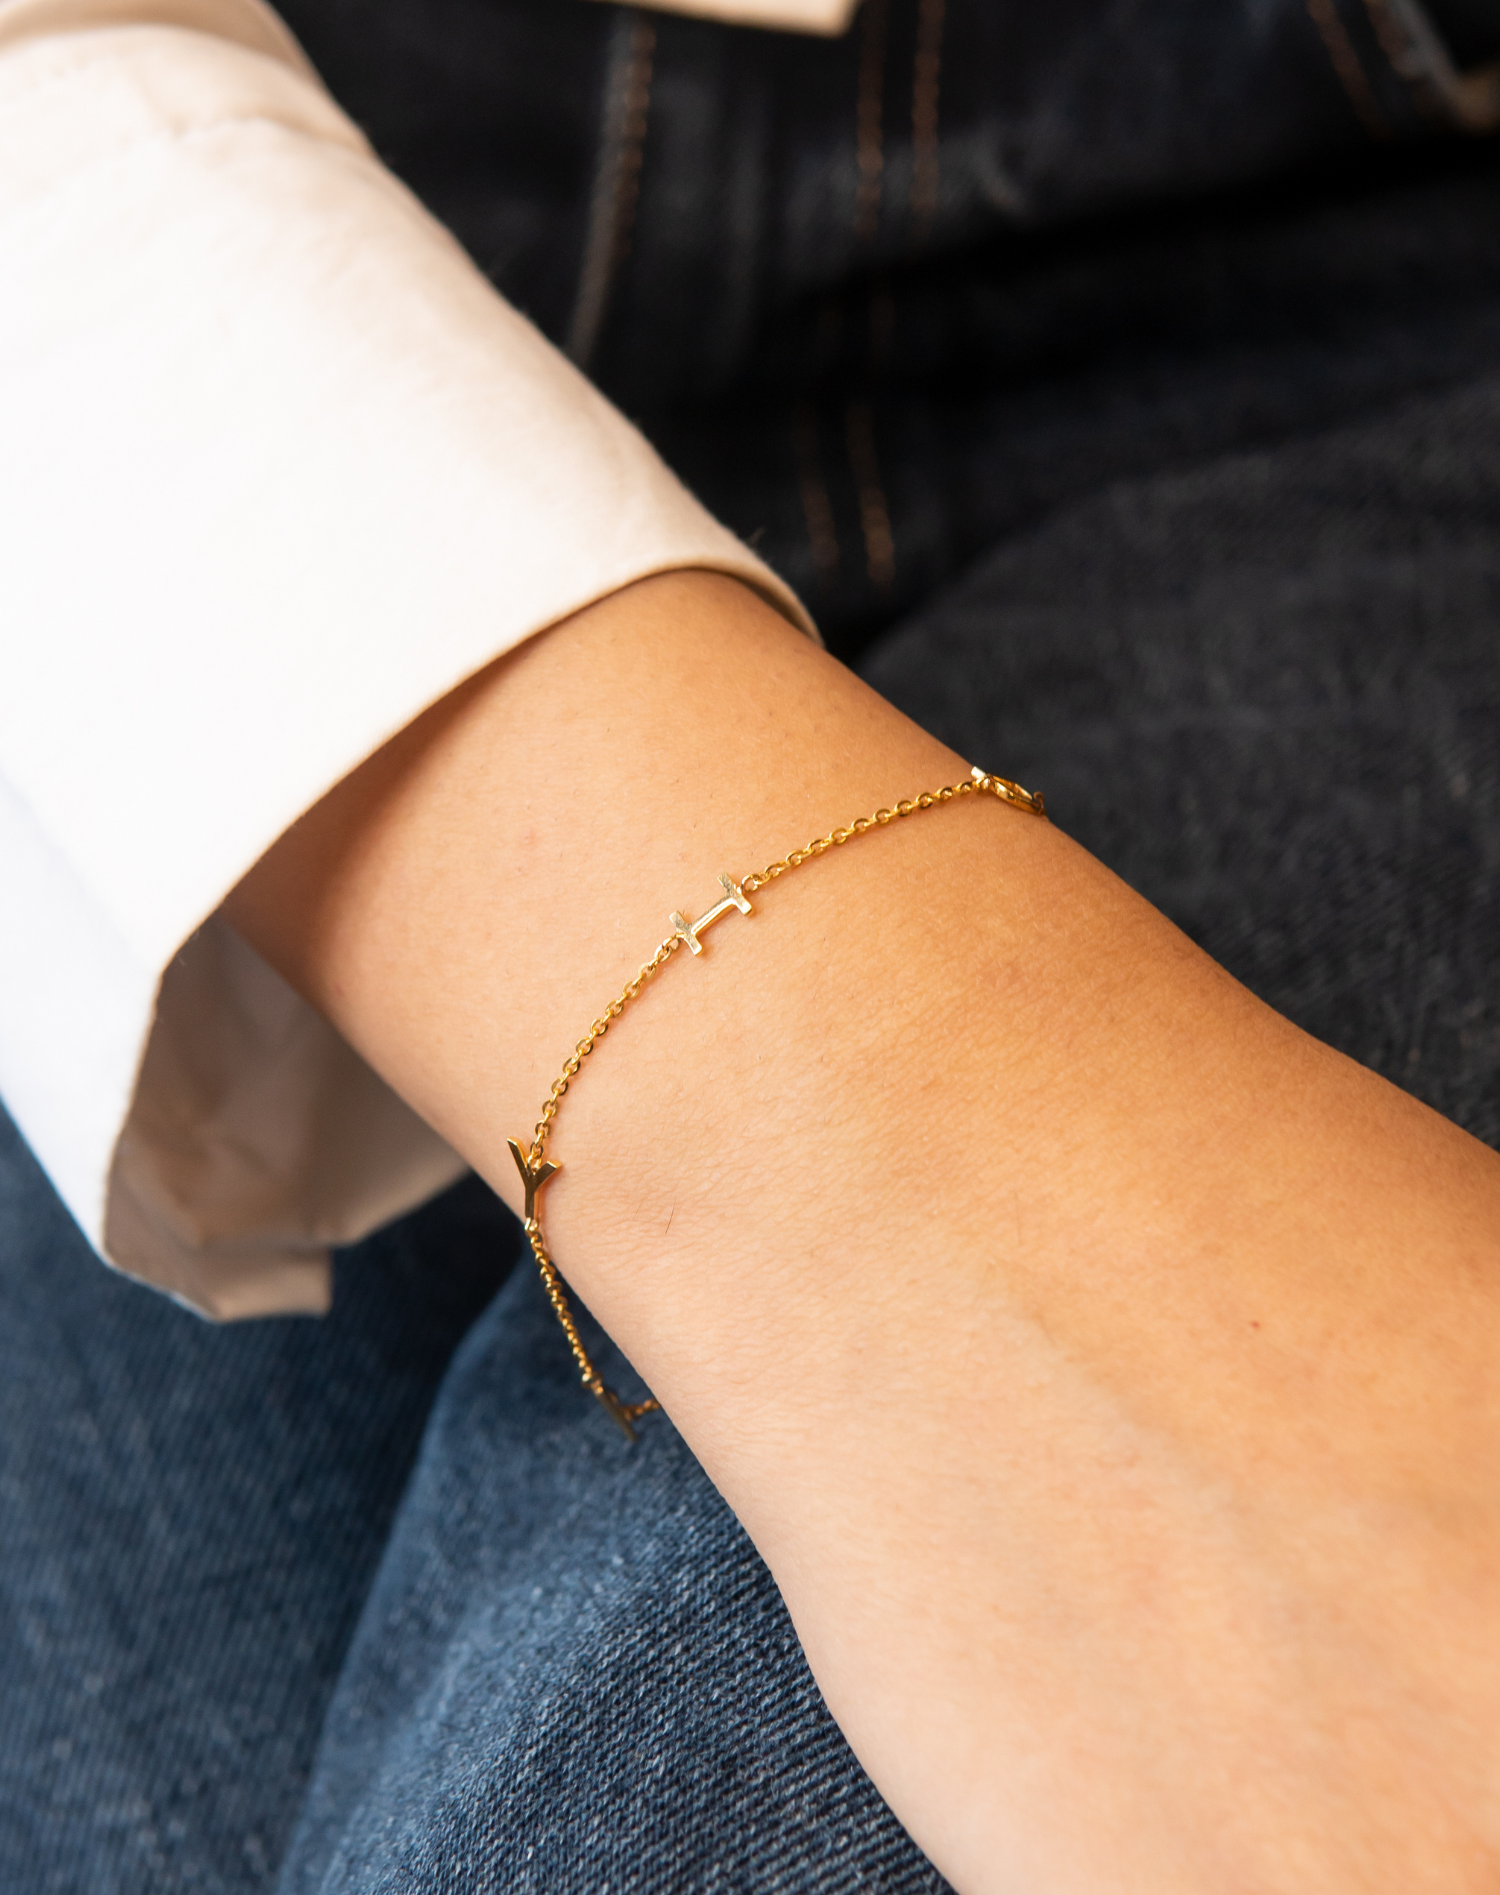 18KT Gold Scattered Name Bracelet, Buy Personalised Bracelets Online